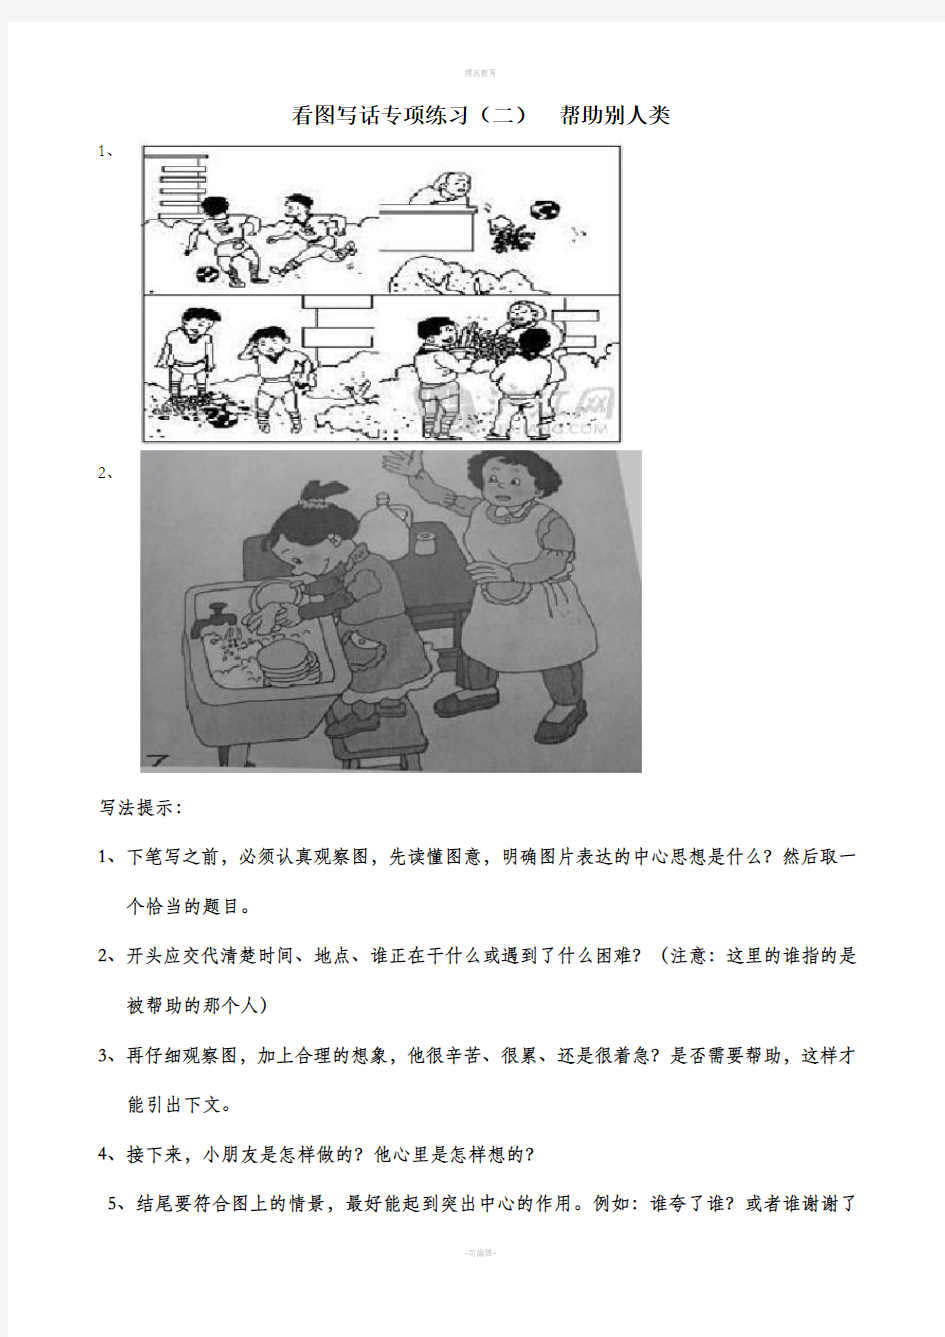 二年级下册看图写话练习(二)-(四)